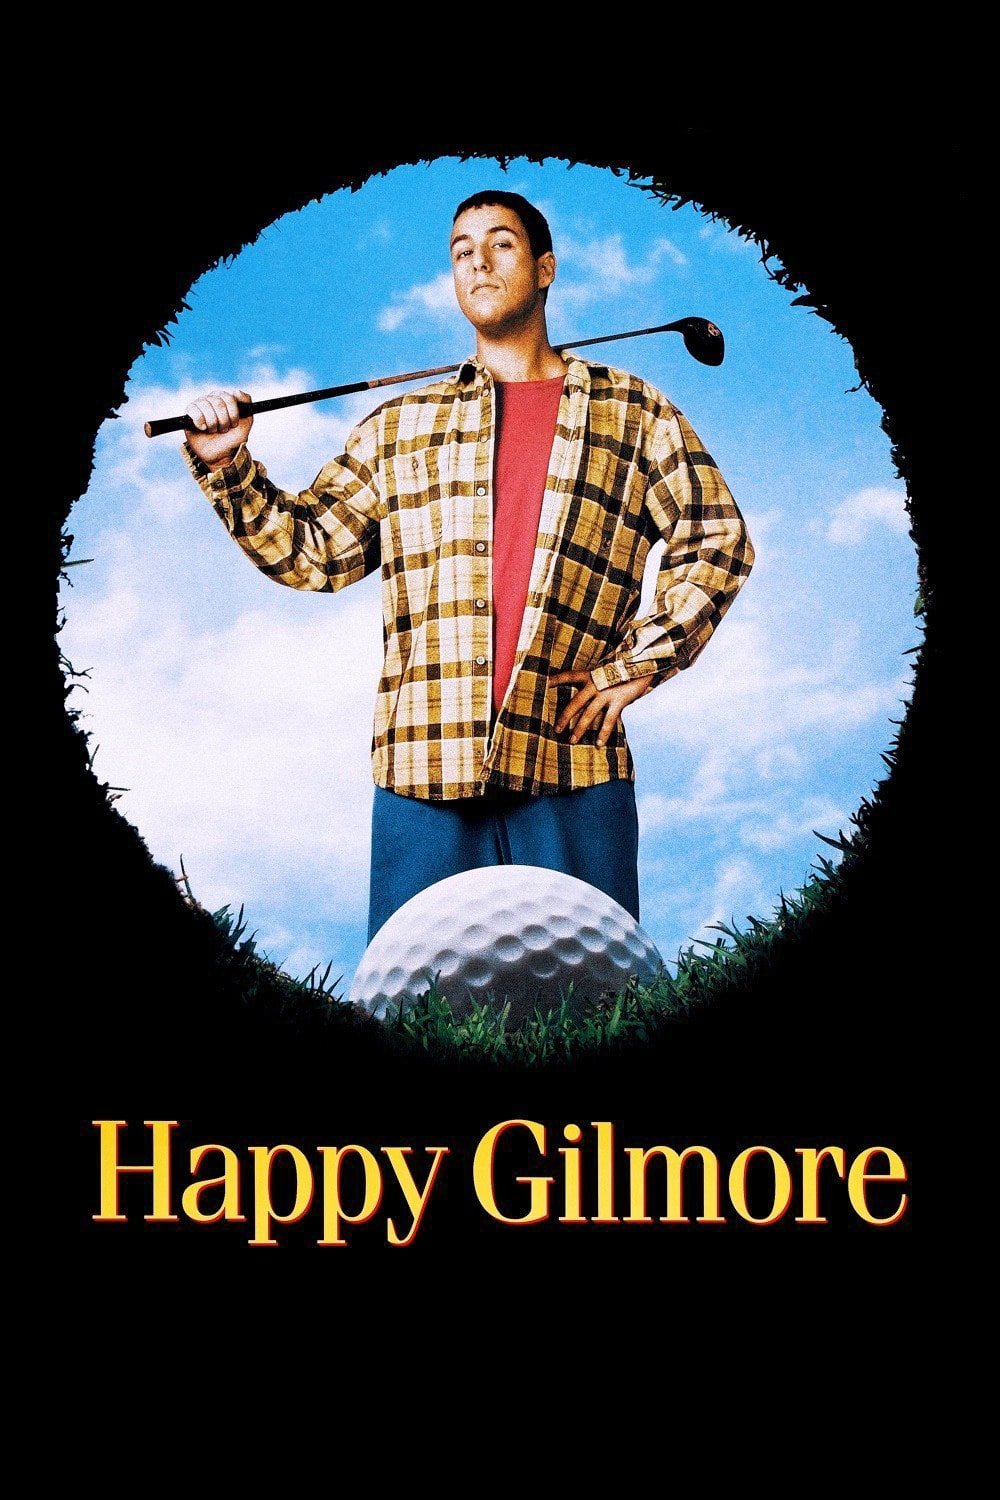 Um Maluco no Golfe (1996)